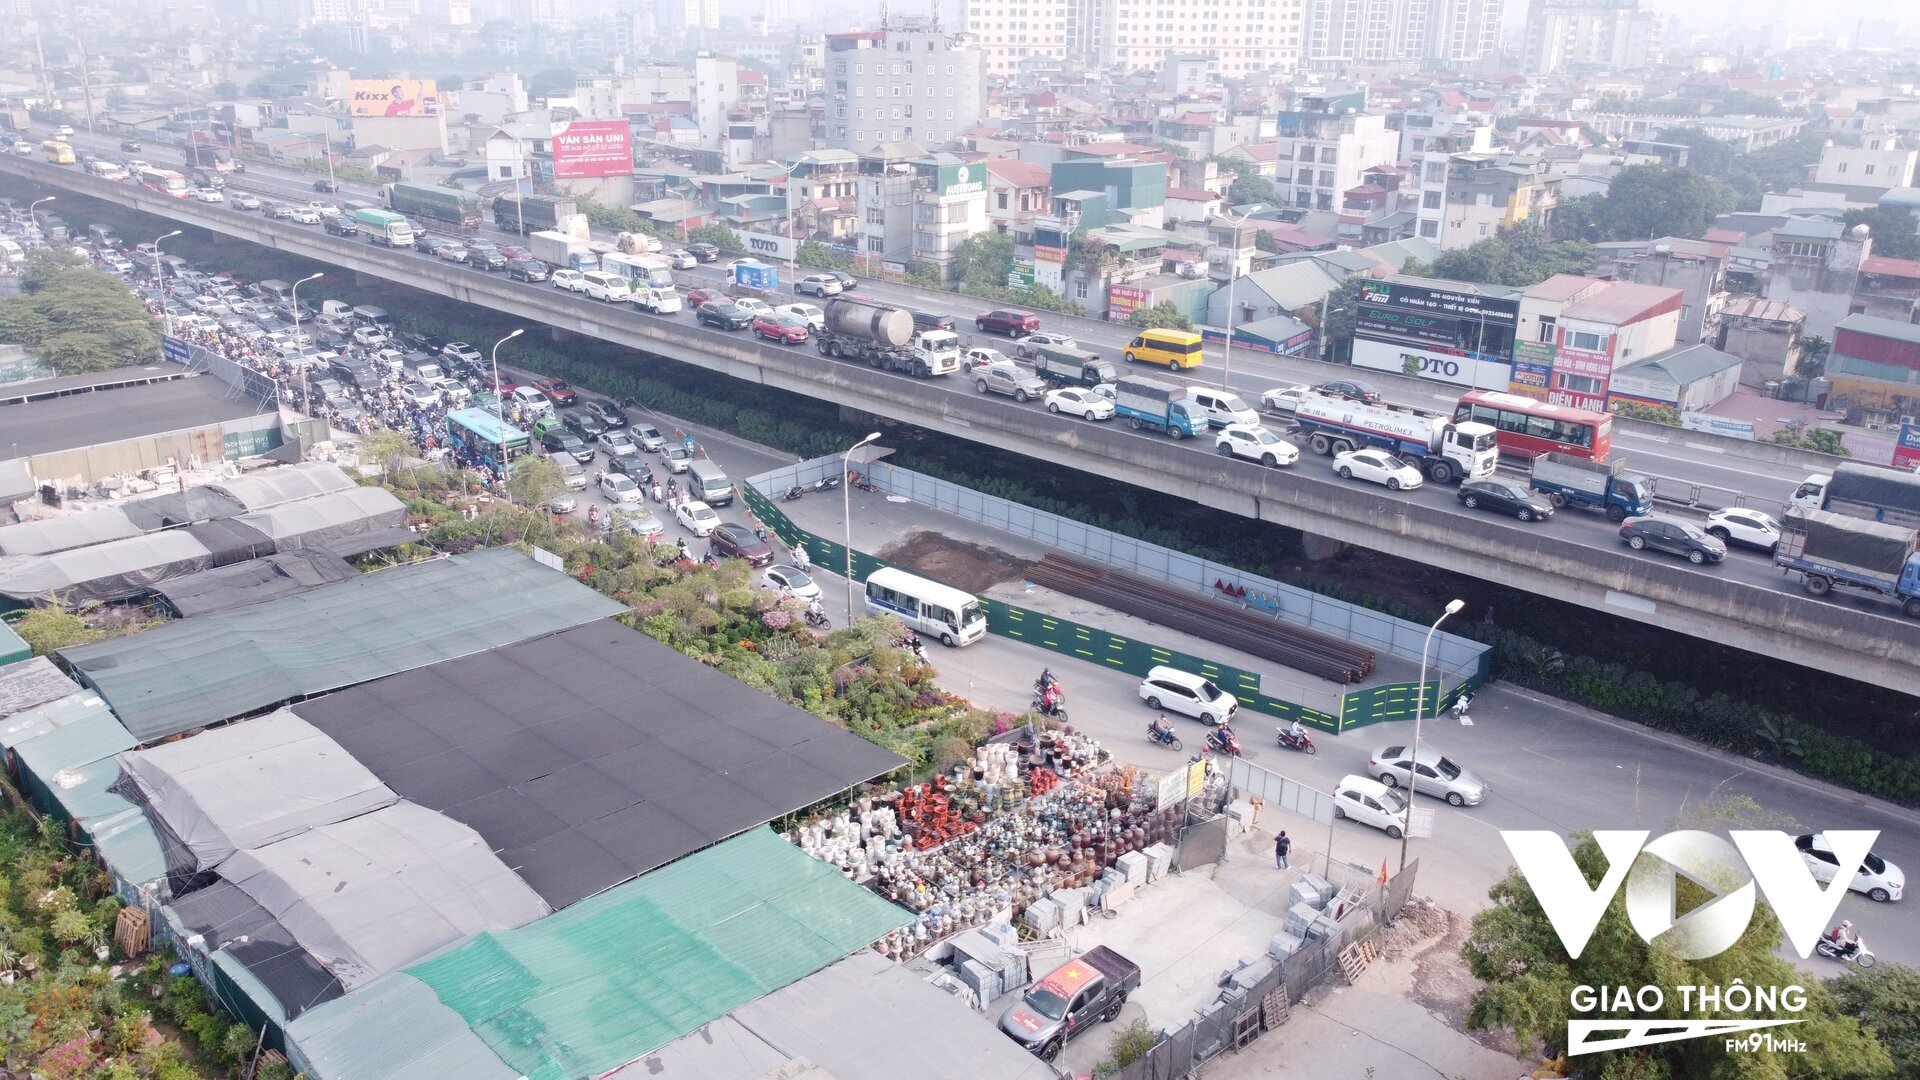 Ghi nhận tình hình giao thông đoạn quây tôn trên đường Nguyễn Xiển rất tắc trong buổi sáng ngày 7/11, các phương tiện gặp khó khăn theo hướng Linh Đàm (Ảnh: Phúc Tài)